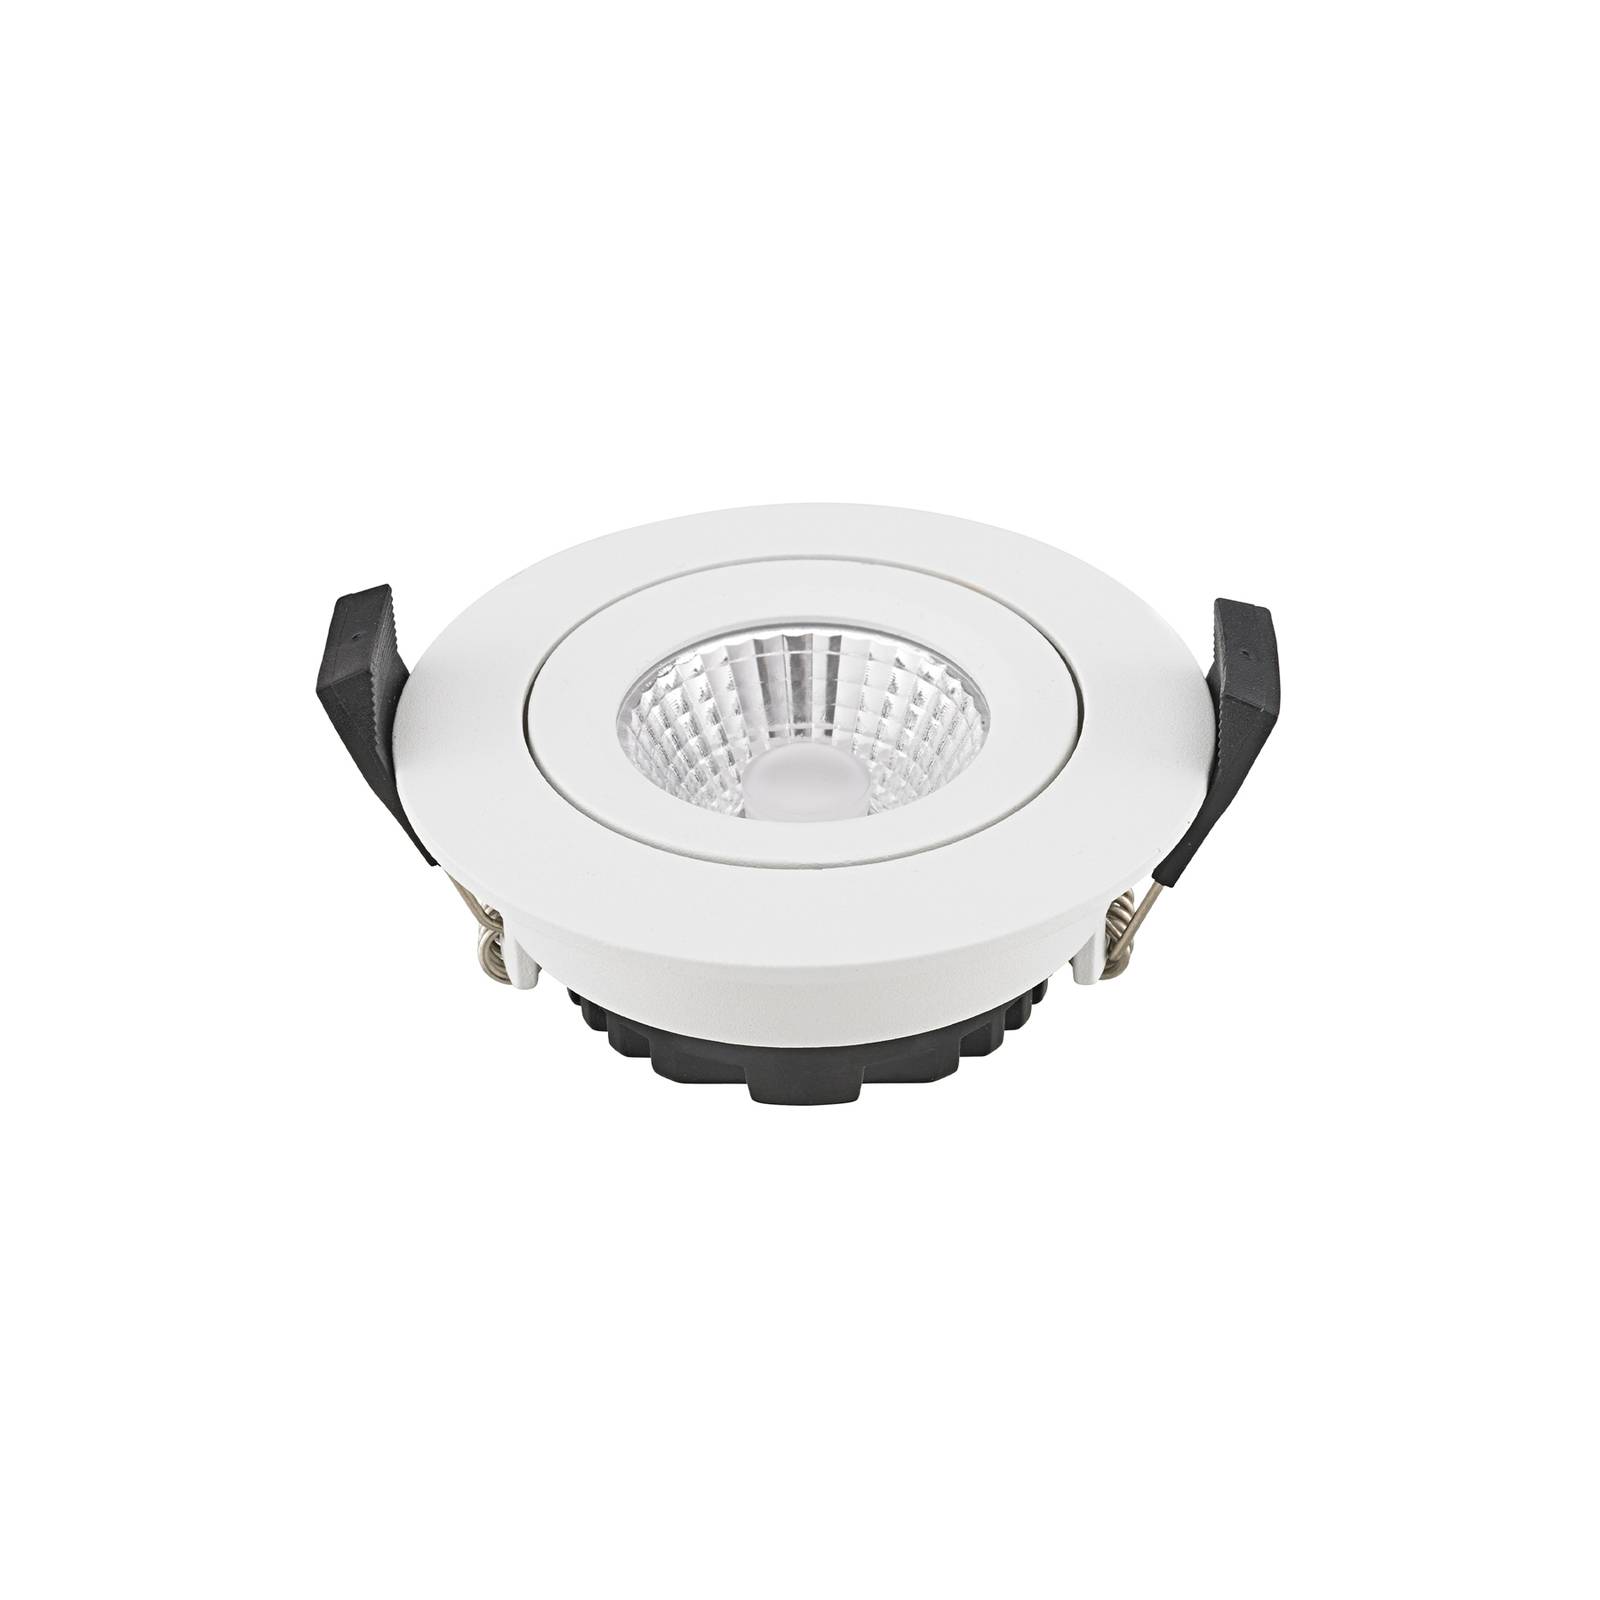 Sigor LED-Deckeneinbauspot Diled, Ø 8,5 cm, 6 W, Dim-To-Warm, weiß